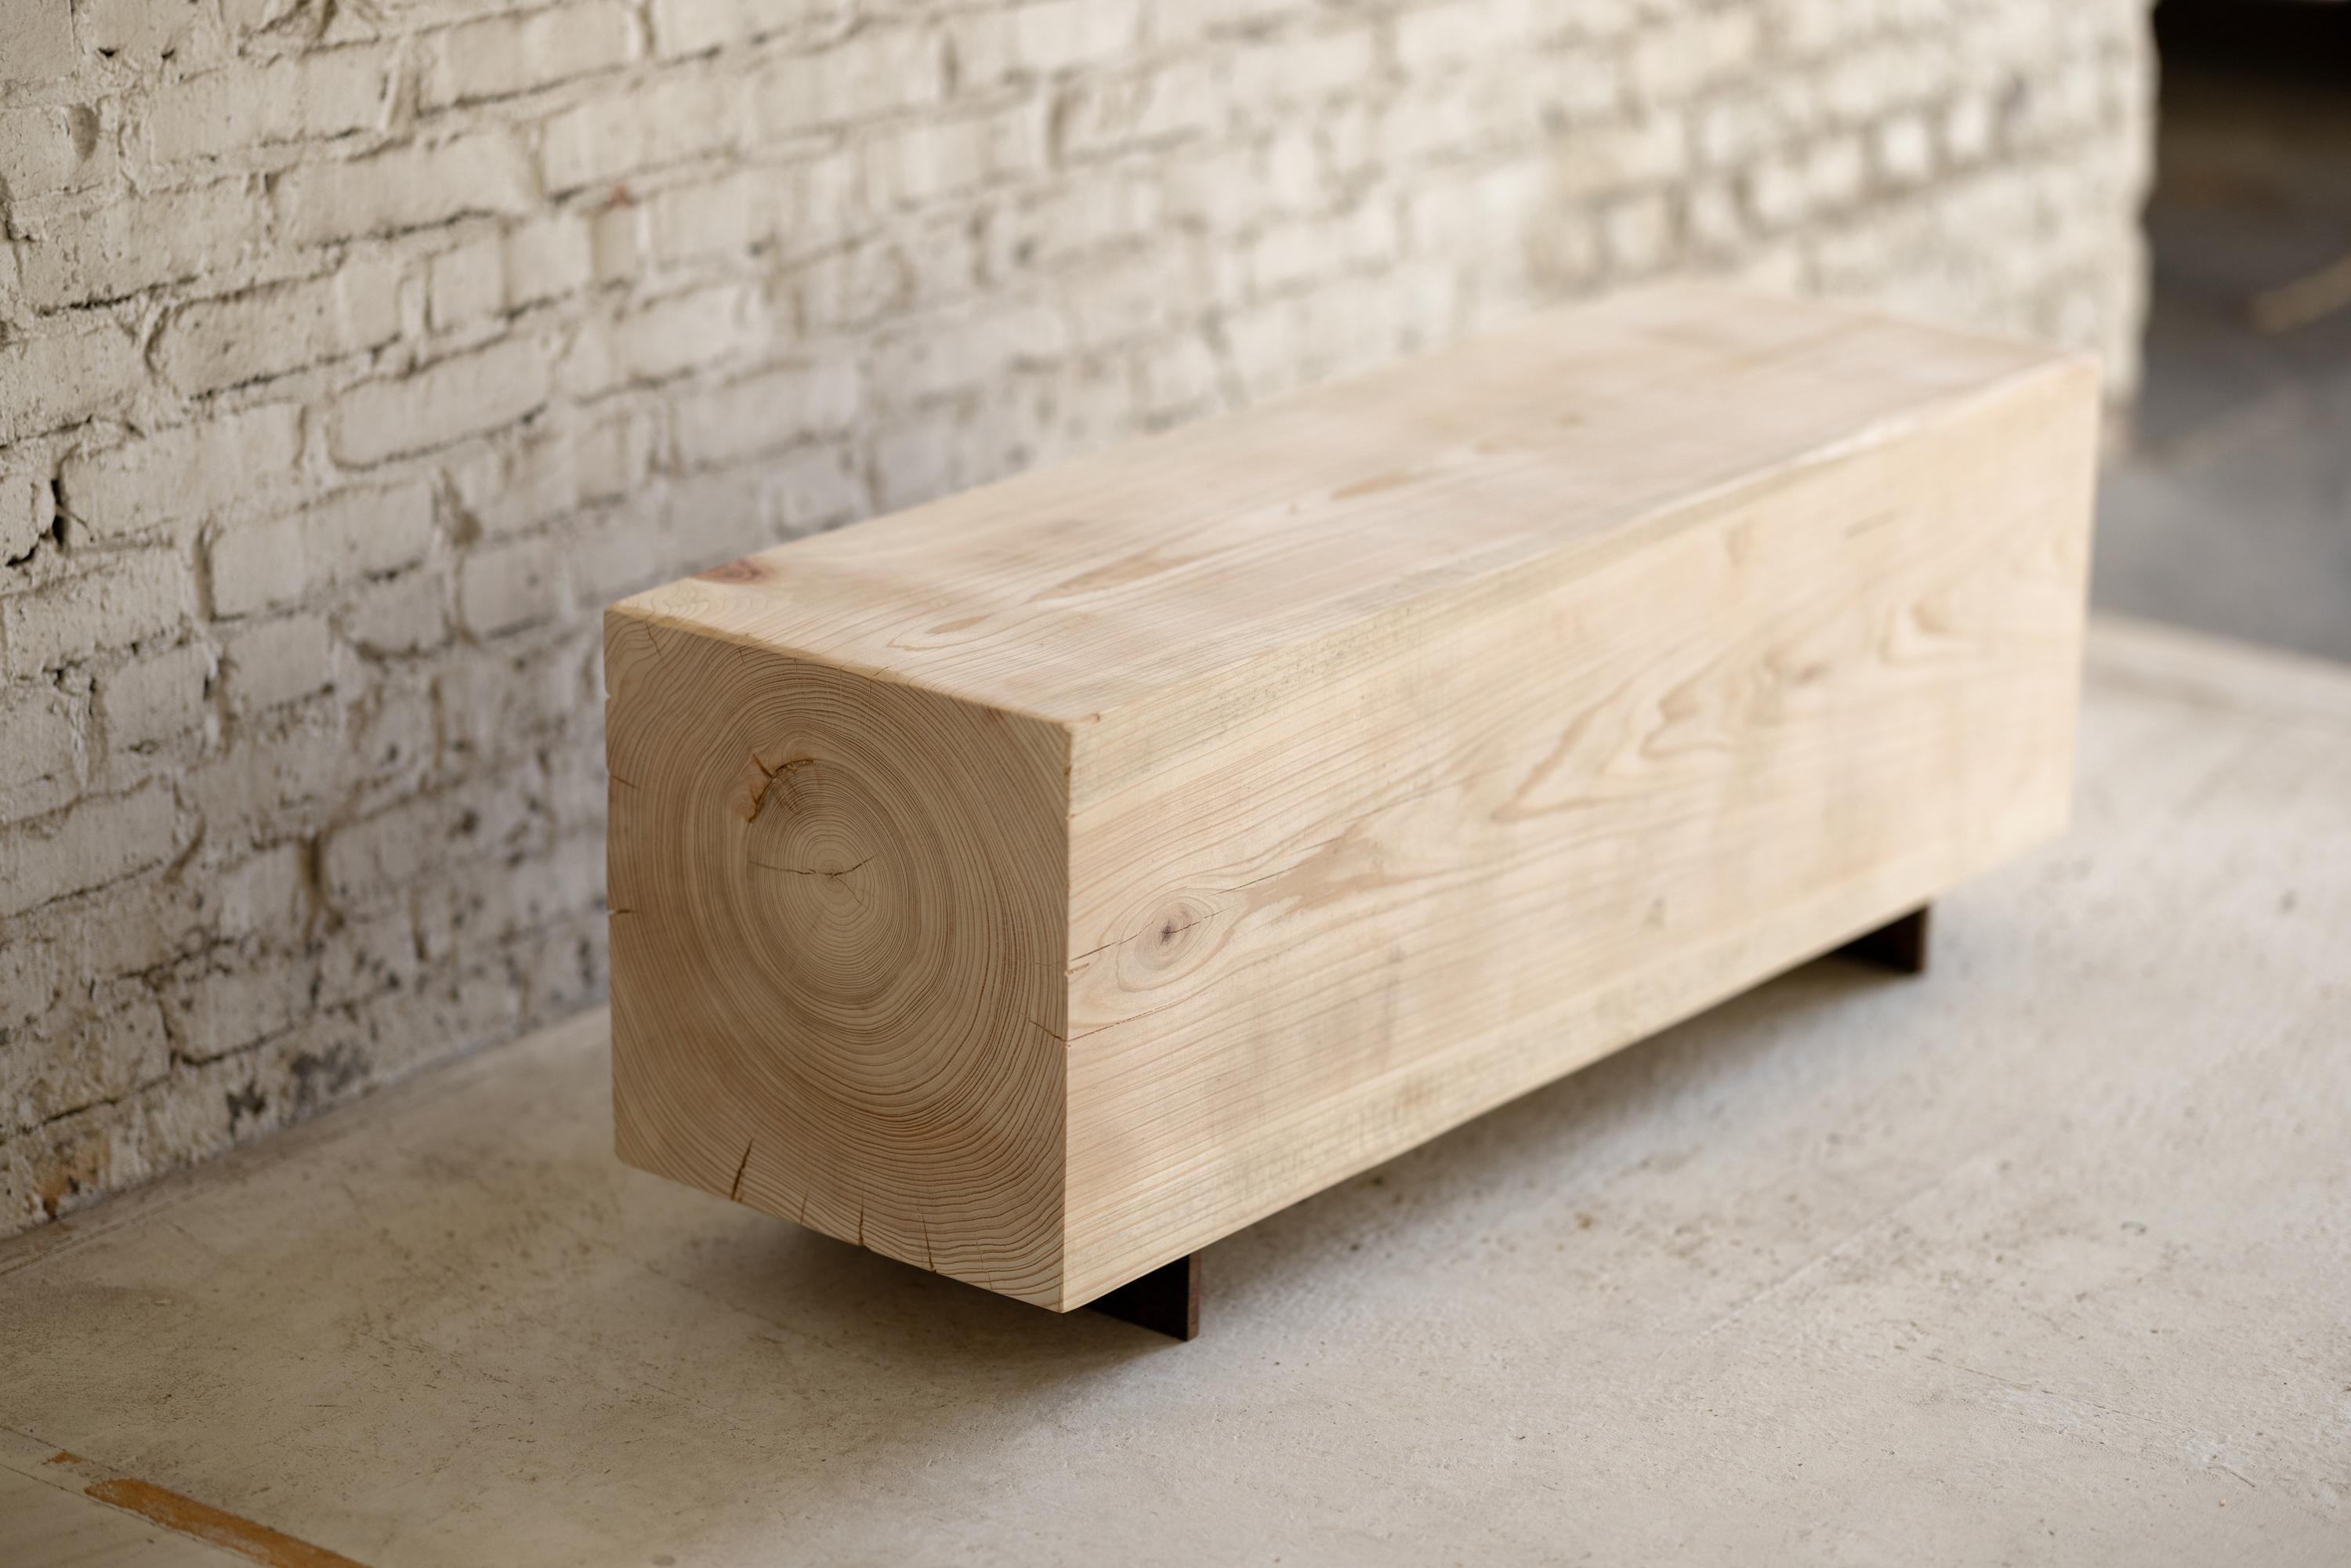 Unsere Holzbalkenbank aus Zypresse besteht aus geborgenen Holzstämmen und bietet ein rustikales Sitzgefühl. Schmal und rückenfrei, bringen die einfachen Linien die natürliche Struktur des Hirnholzes zum Ausdruck. Der 15